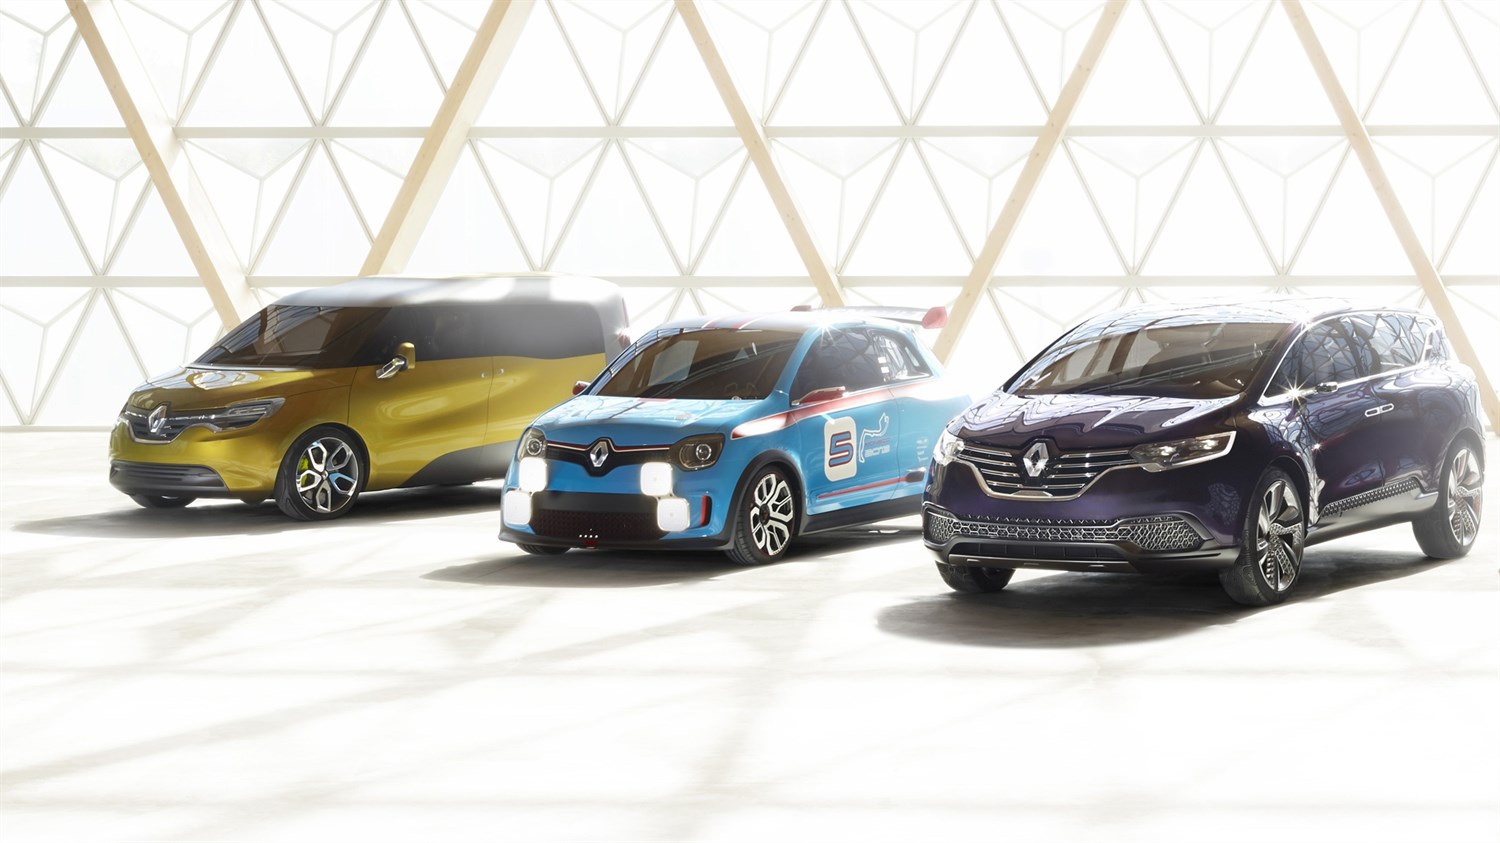 Renault - gamme concept-cars - 3 véhicules vue 3/4 avant gauche